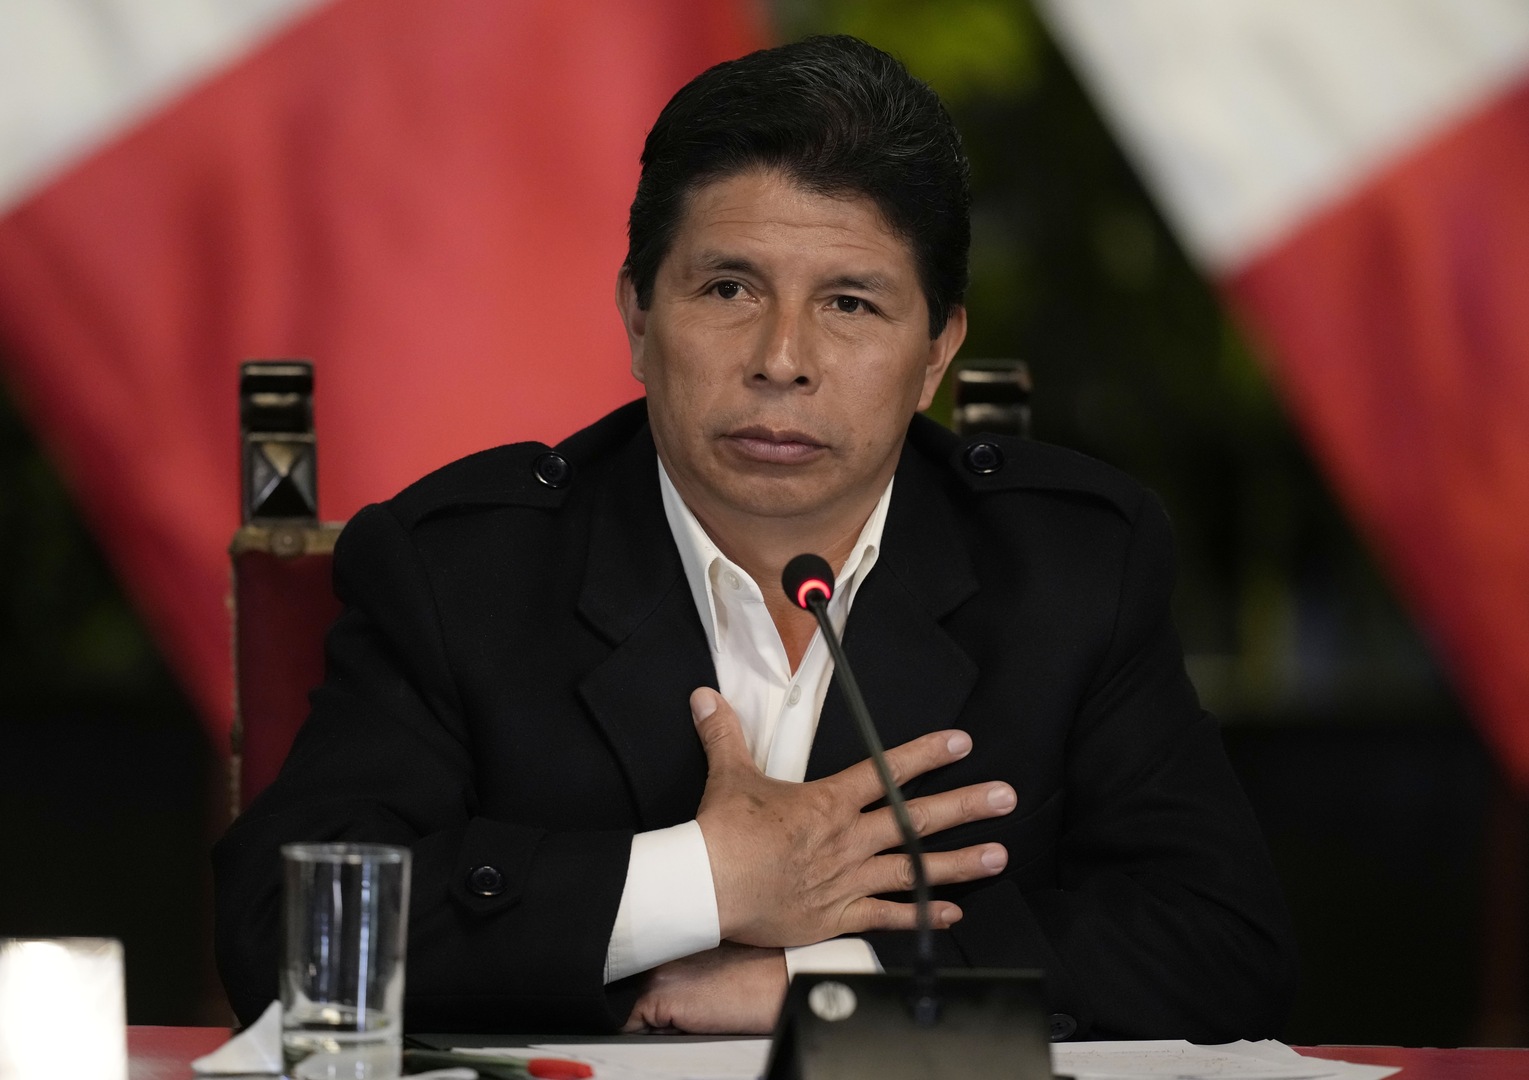 رئيس بيرو يعلن حل البرلمان وفرض حالة الطوارئ في البلاد